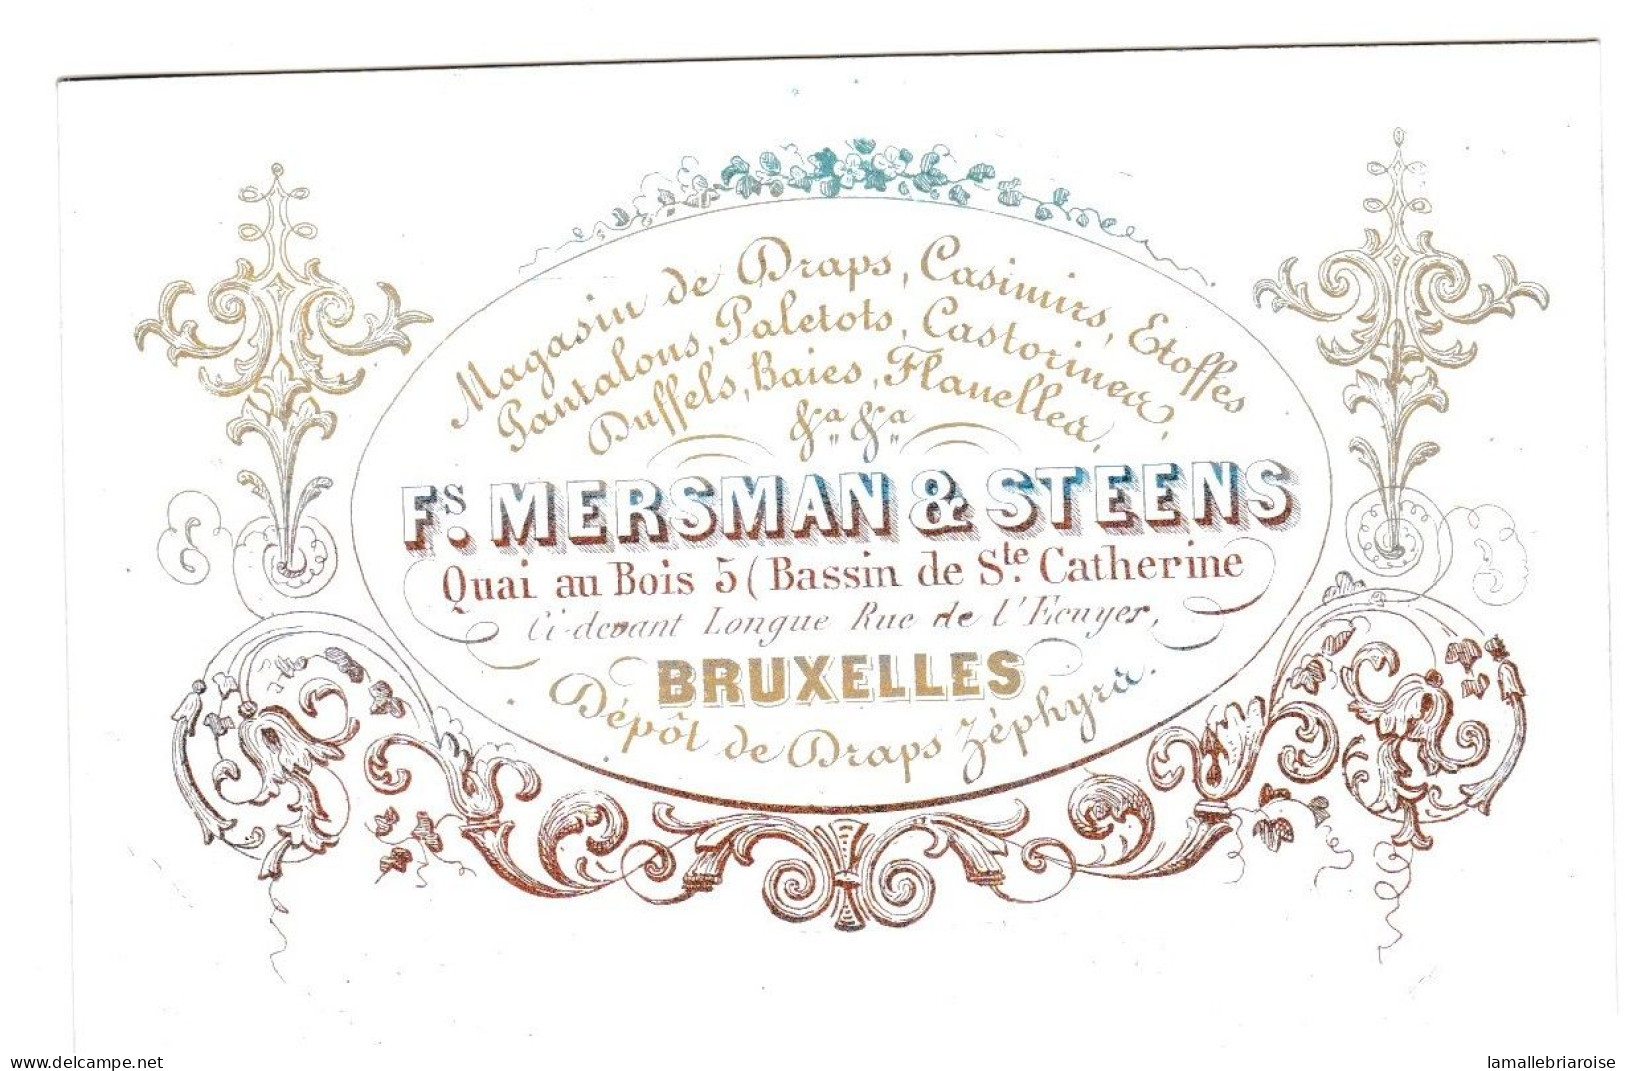 Belgique "Carte Porcelaine" Porseleinkaart, Fs. Mersman & Steens, Draps, Casimirs, Bruxelles, Dim:98 X 63mm - Cartoline Porcellana